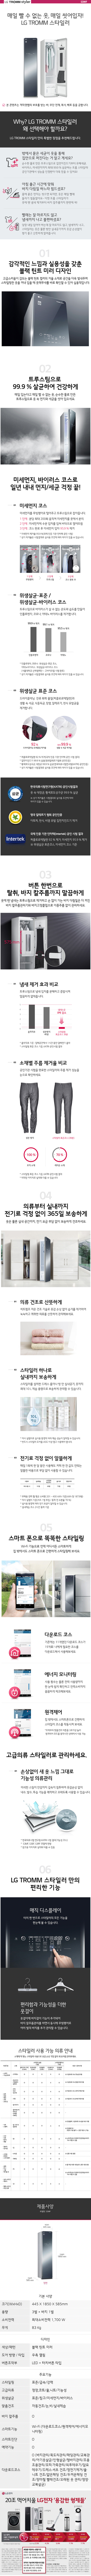 송파케이블 - LG 스타일러 블랙틴트 (S3MF) 상세보기